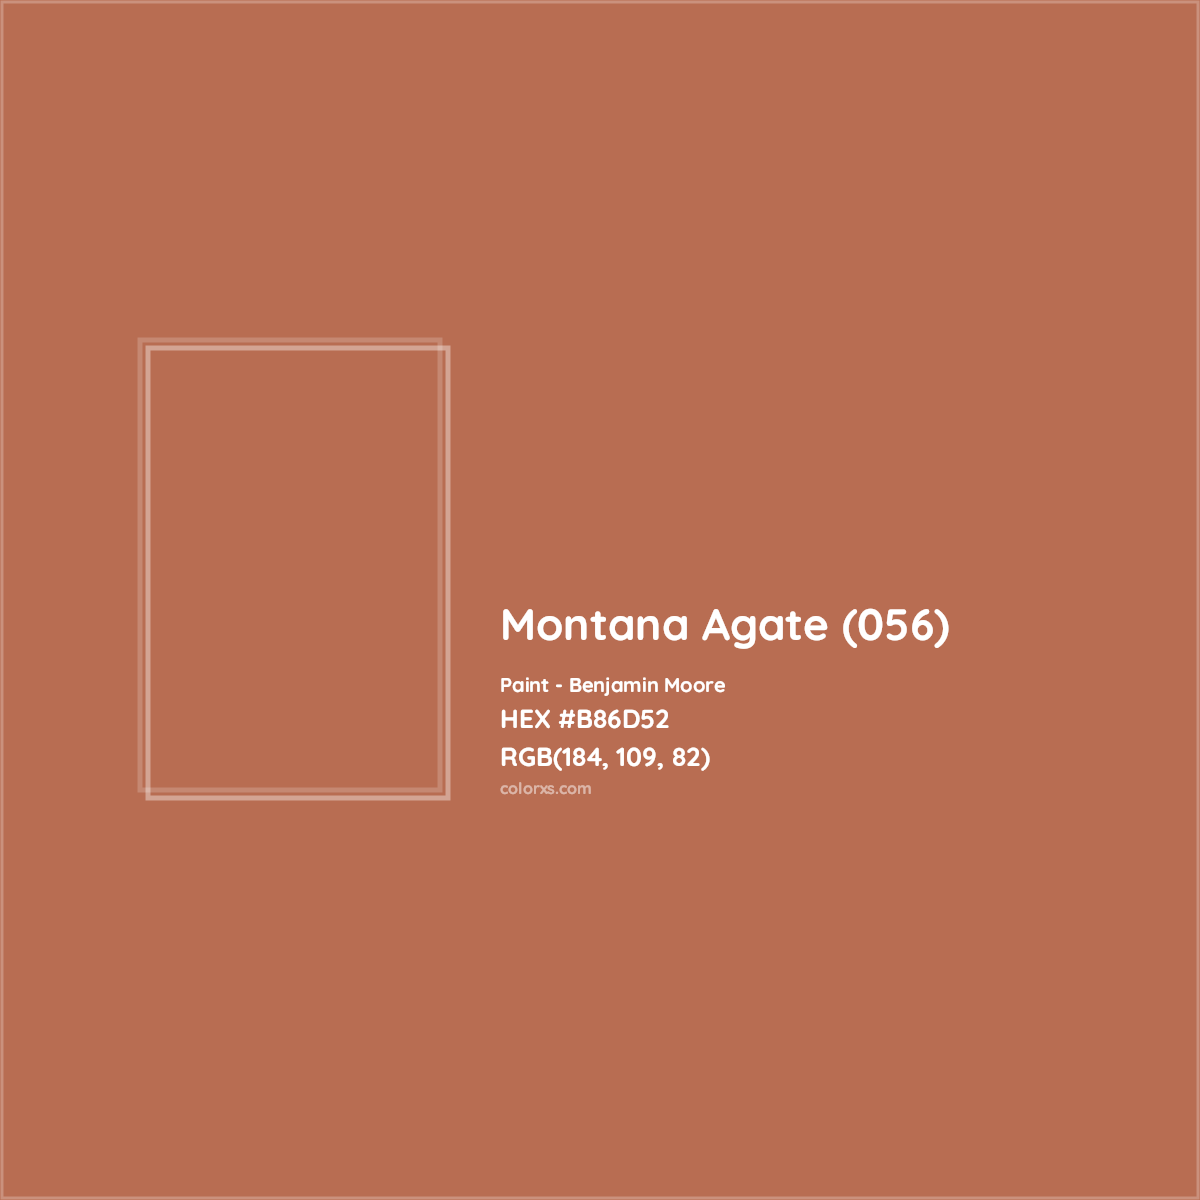 HEX #B86D52 Montana Agate (056) Paint Benjamin Moore - Color Code